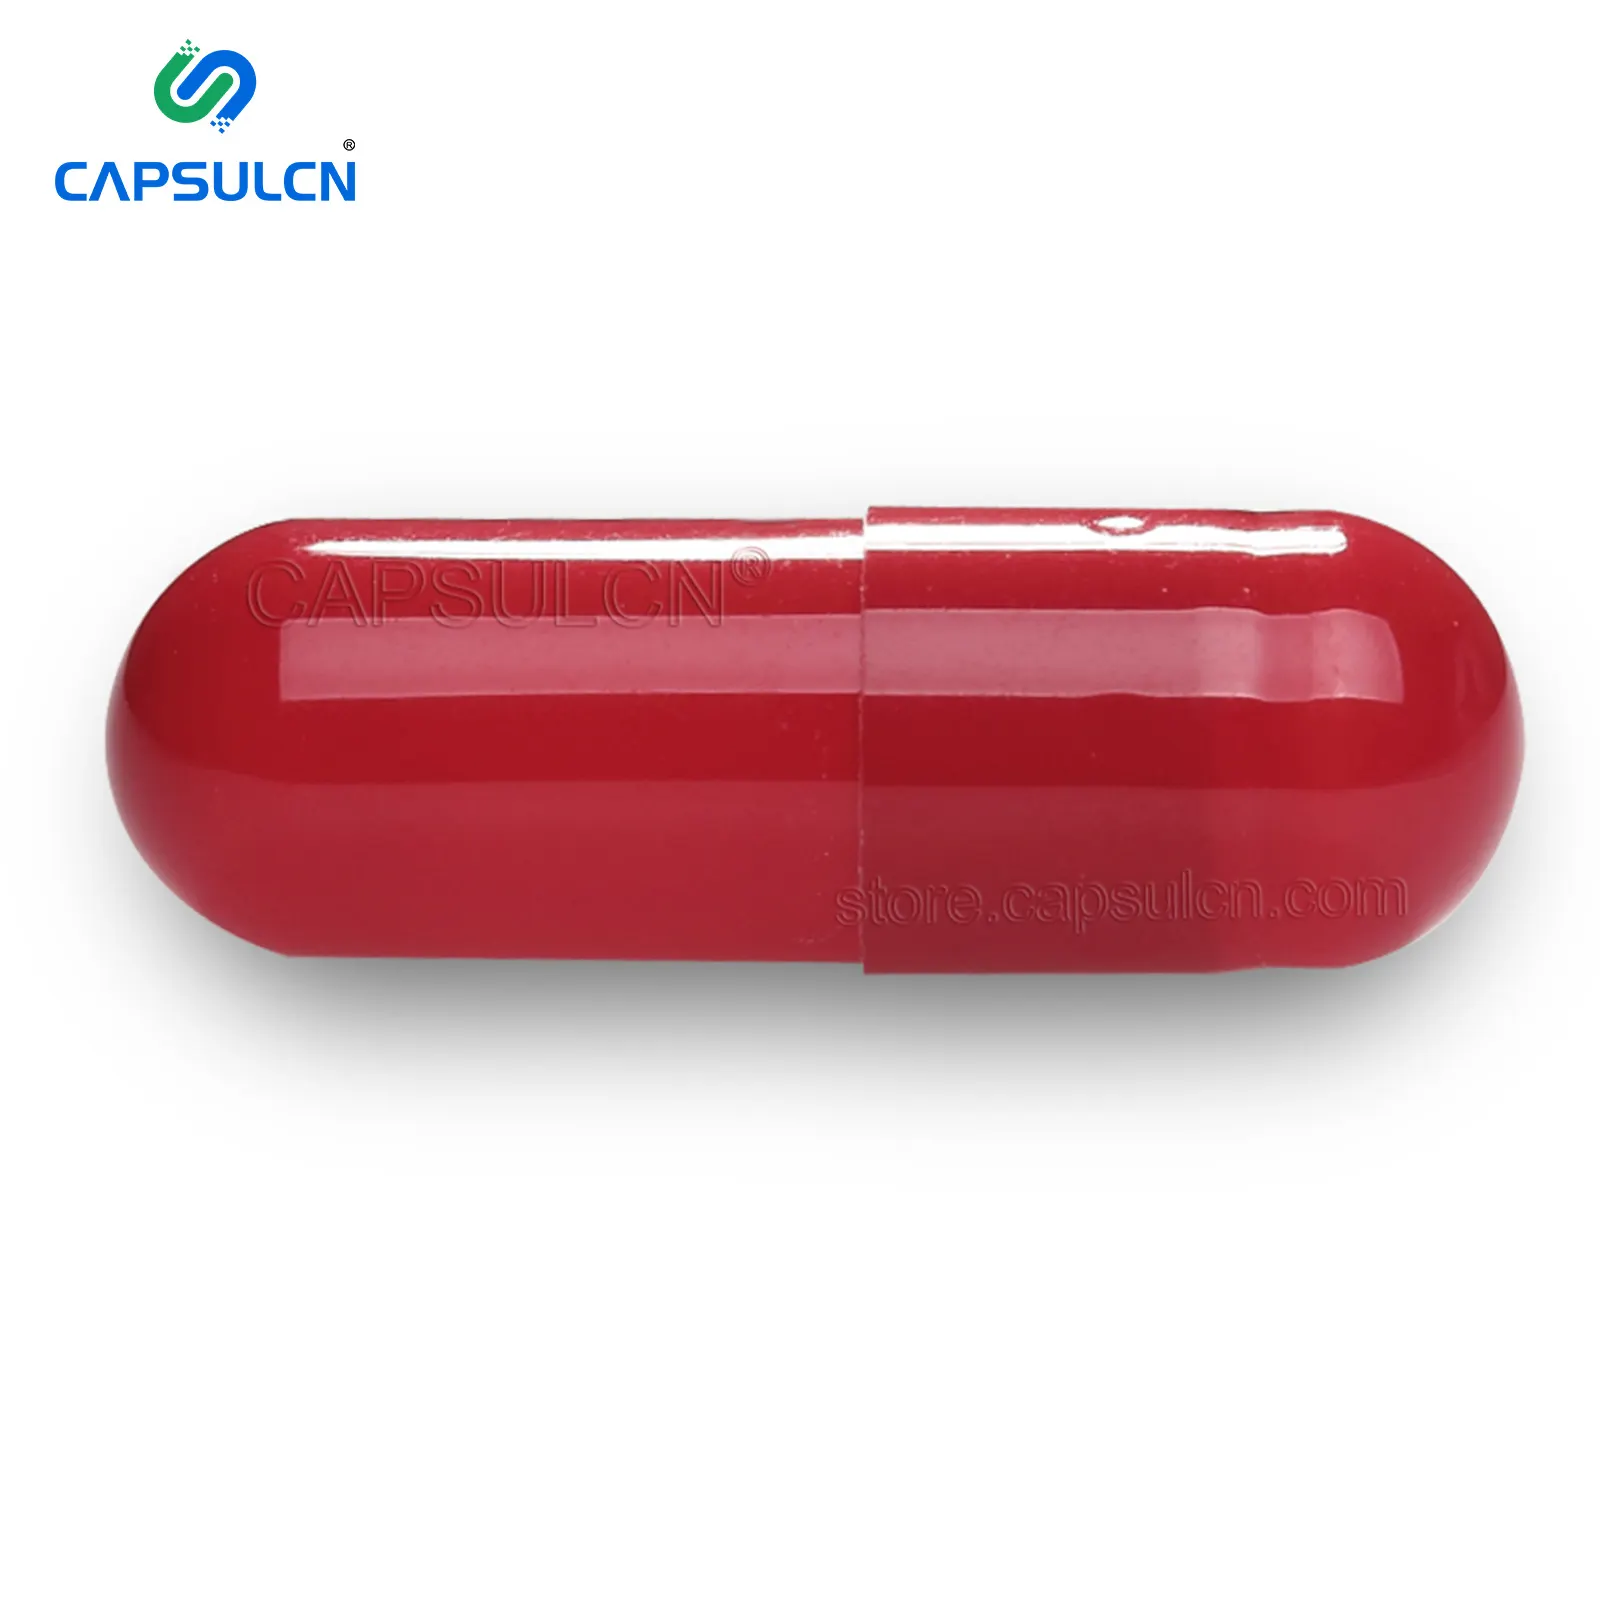 CapsulCN i più venduti capsule di gelatina vuote certificate Halal capsule rigide capsule trasparenti molti colori diversi